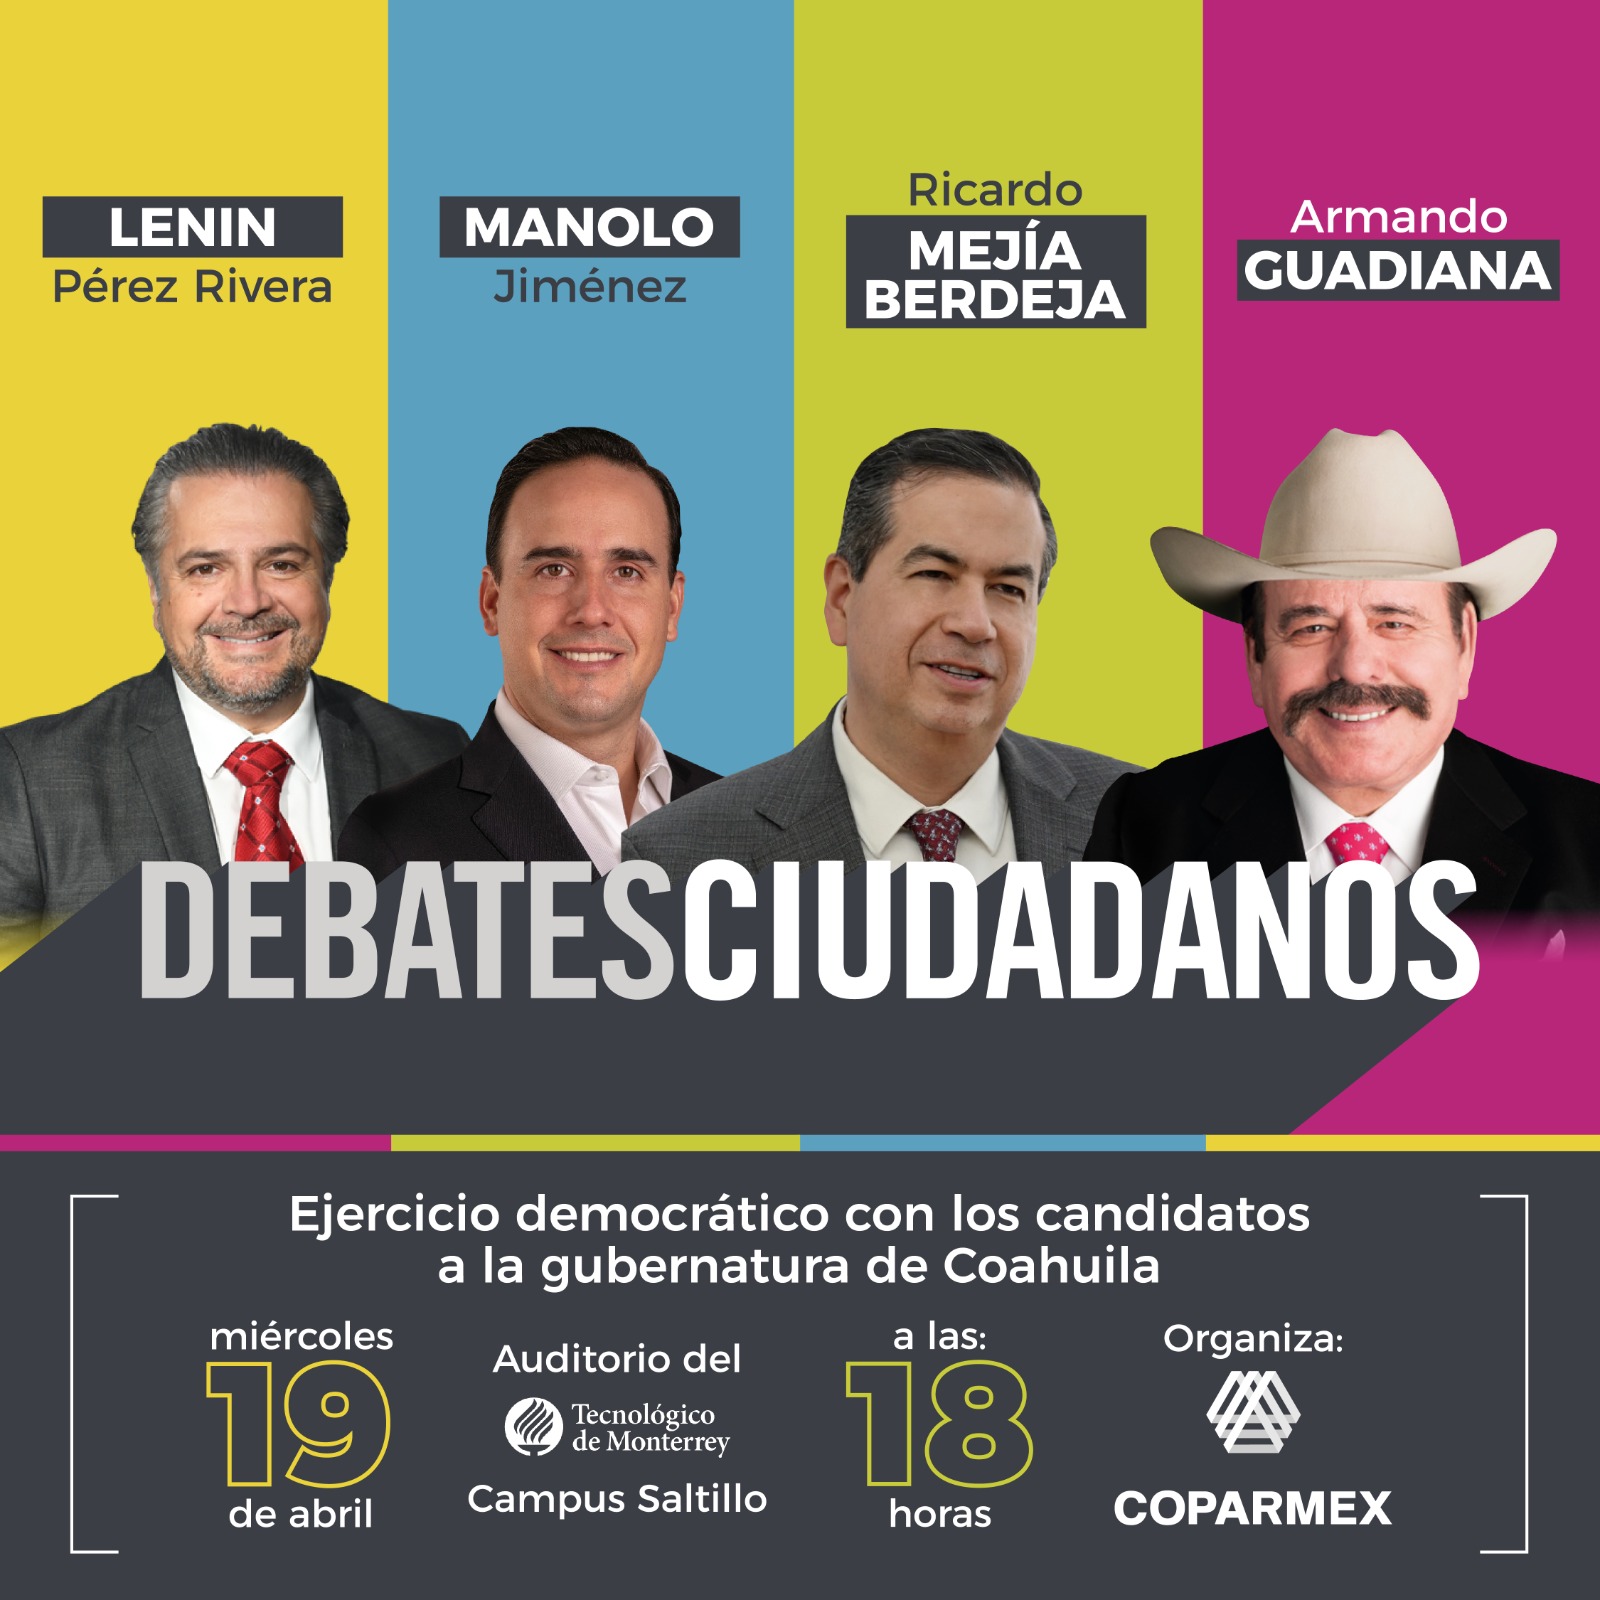 Se llevó a cabo el debate entre candidatos a gobernador de Coahuila organizado por la Coparmex